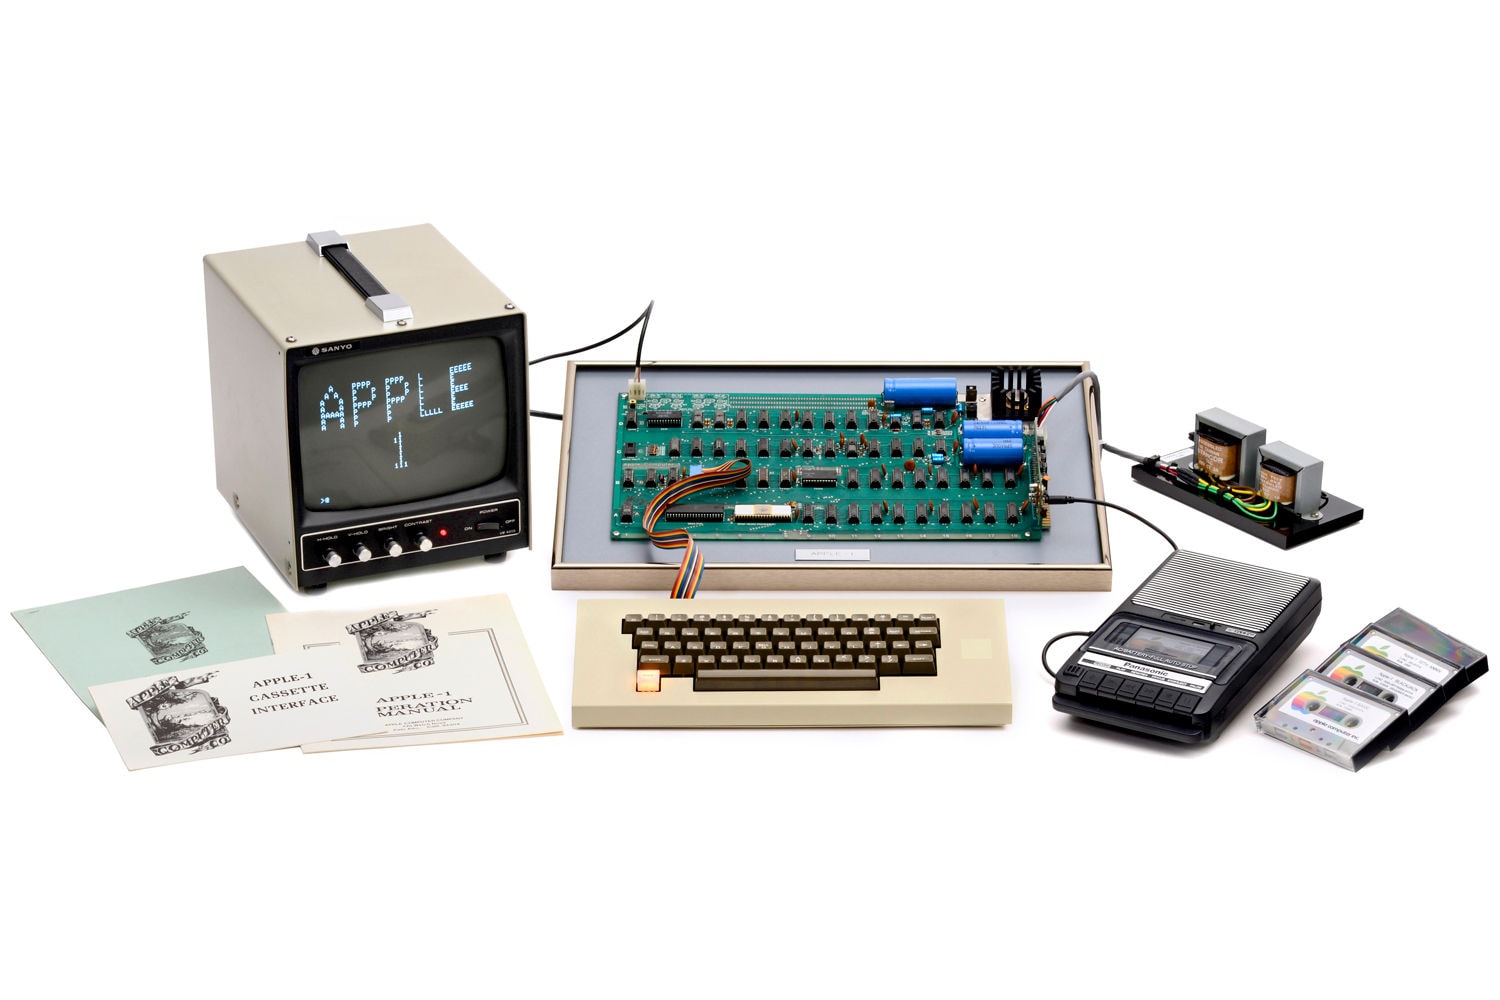 功能完善的初代 Apple 電腦「Apple-1」將於下個月進行拍賣